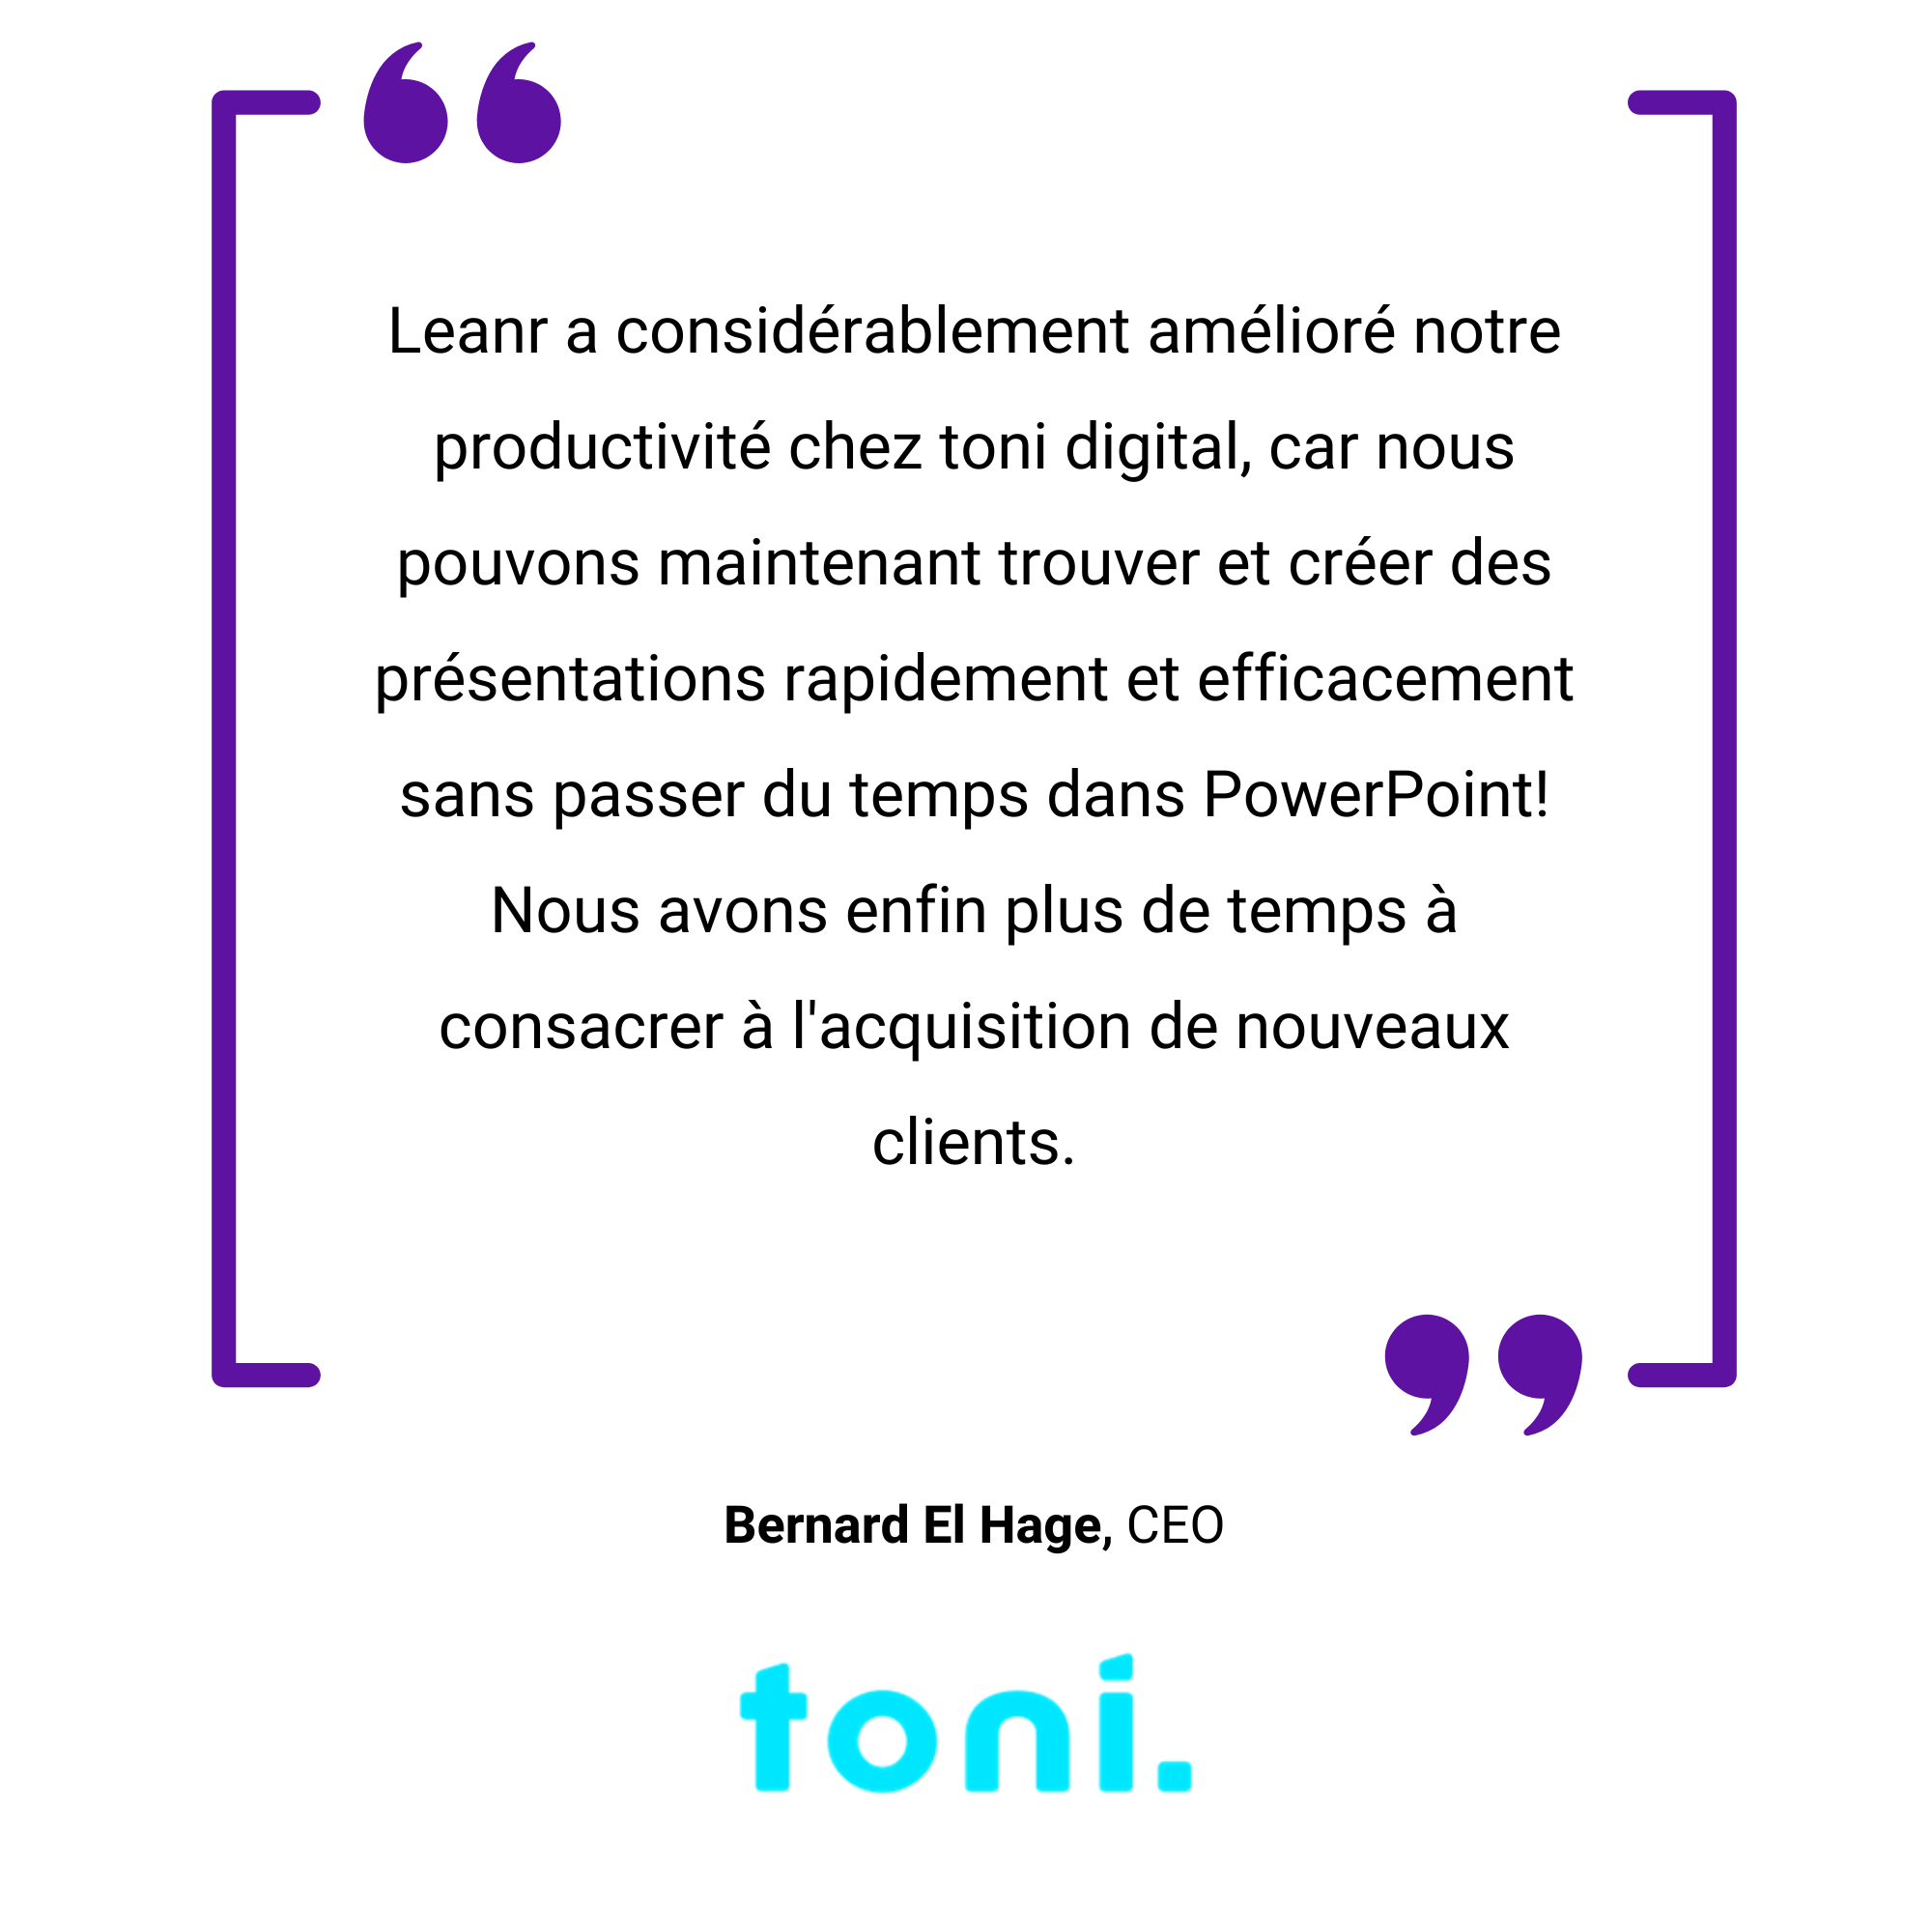 Une image graphique comportant une citation en français sur la productivité et les outils numériques par Bernard El Hage, affichée dans une boîte de dialogue violette avec le logo "tonis" en bas à droite.